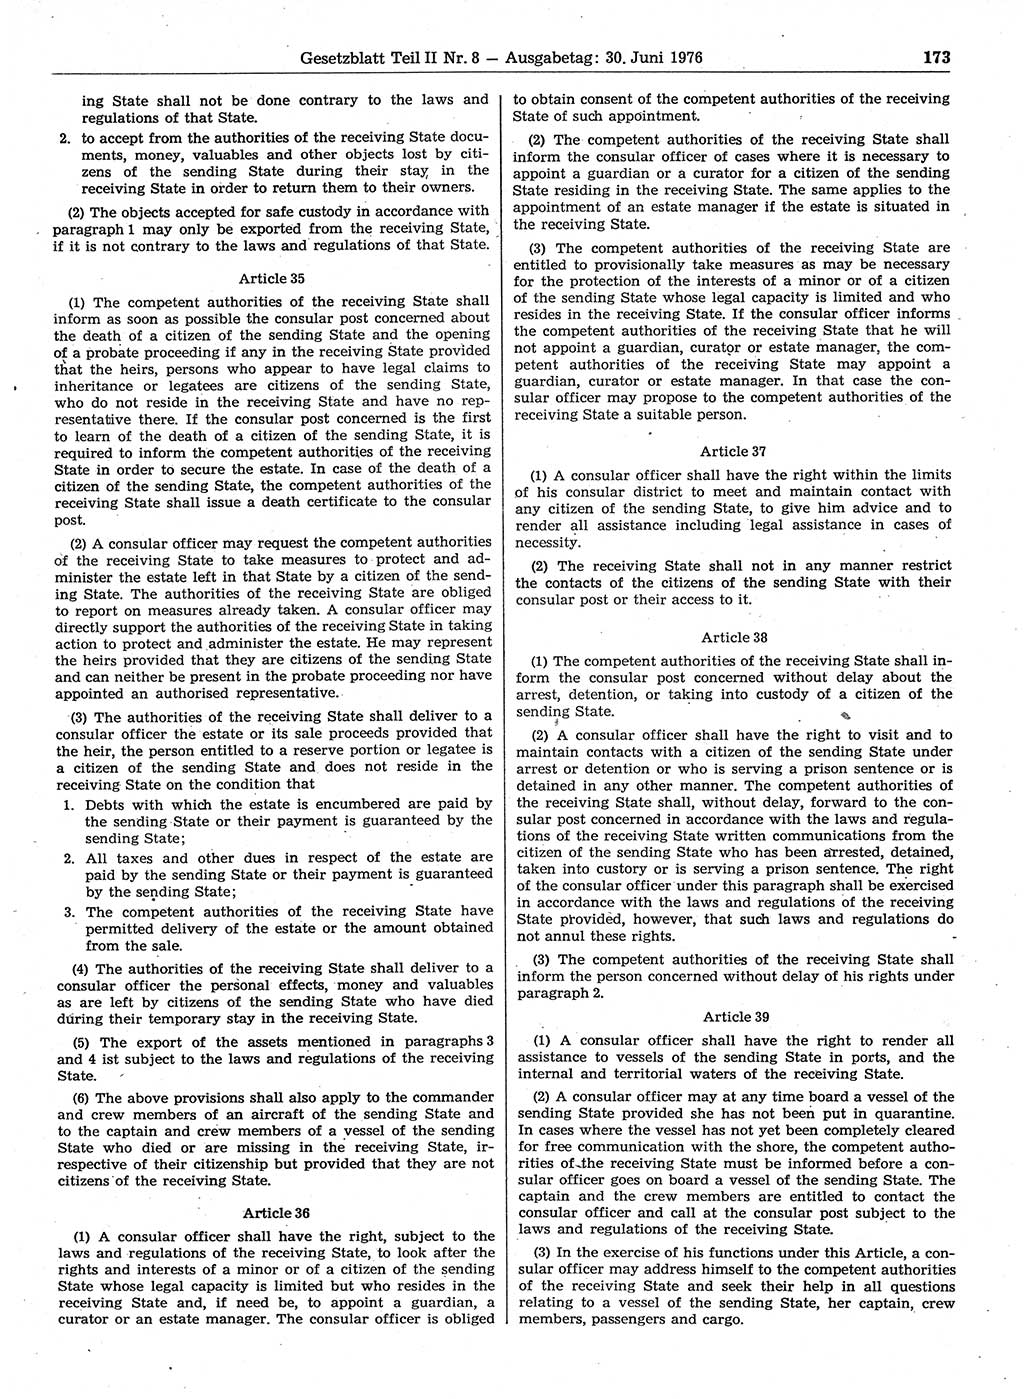 Gesetzblatt (GBl.) der Deutschen Demokratischen Republik (DDR) Teil ⅠⅠ 1976, Seite 173 (GBl. DDR ⅠⅠ 1976, S. 173)